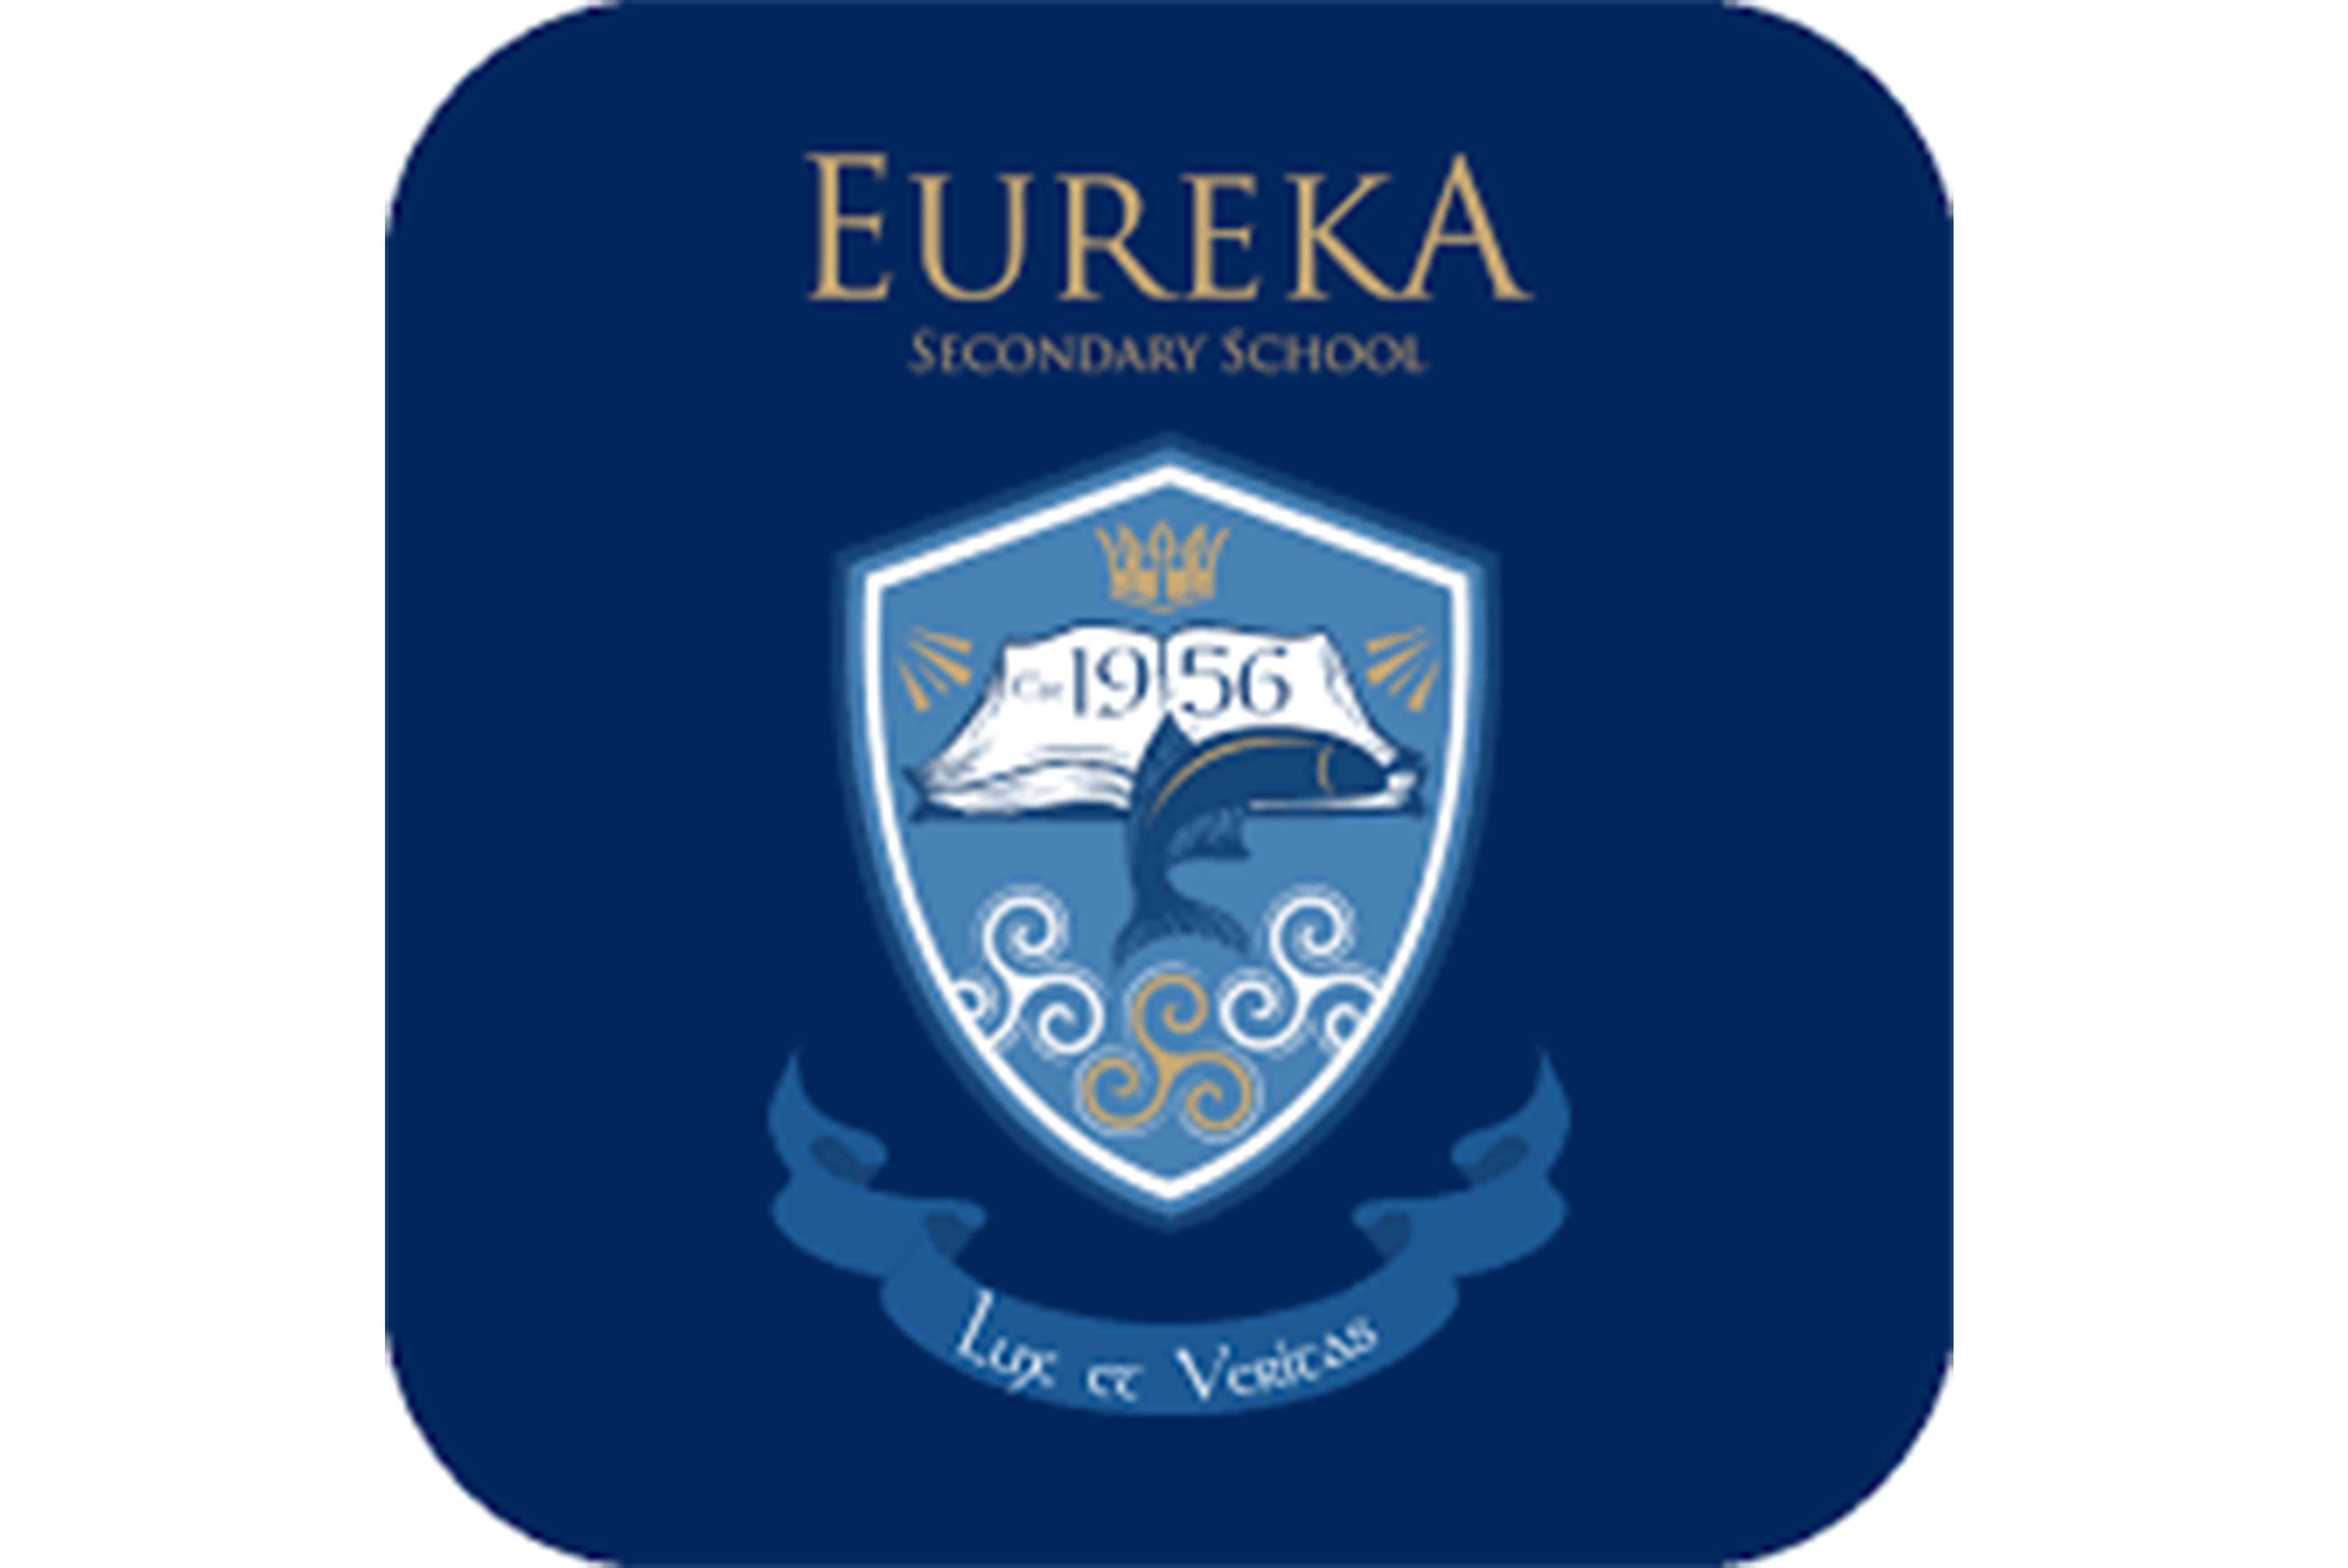 Eureka scolar school